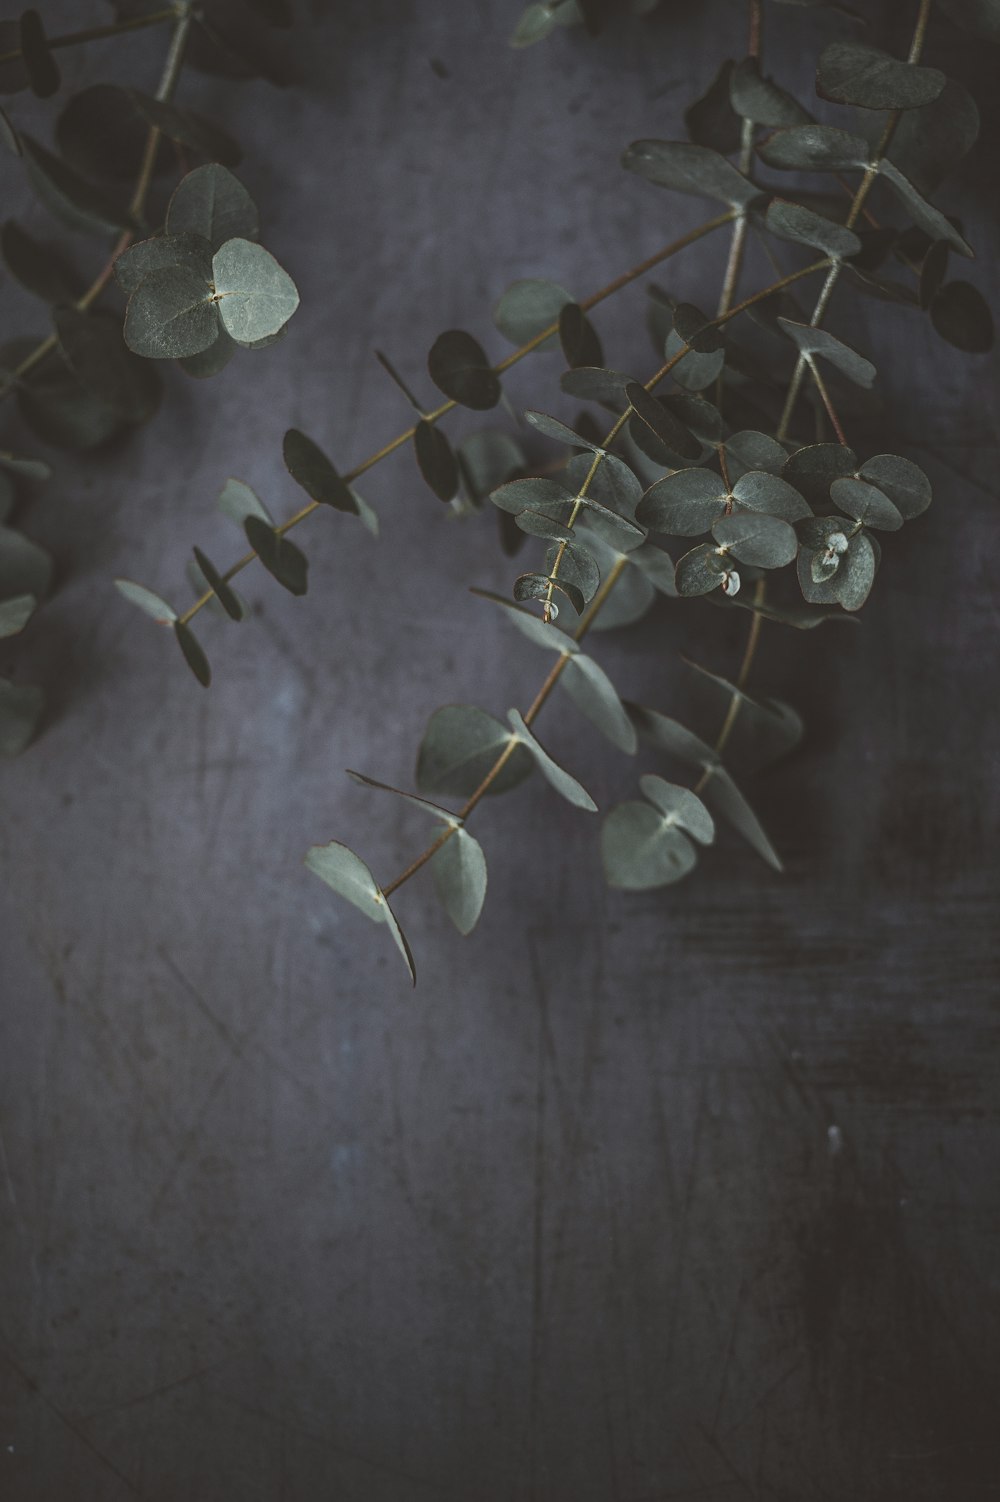 회색 표면에 녹색 잎이 달린 식물의 근접 촬영 사진